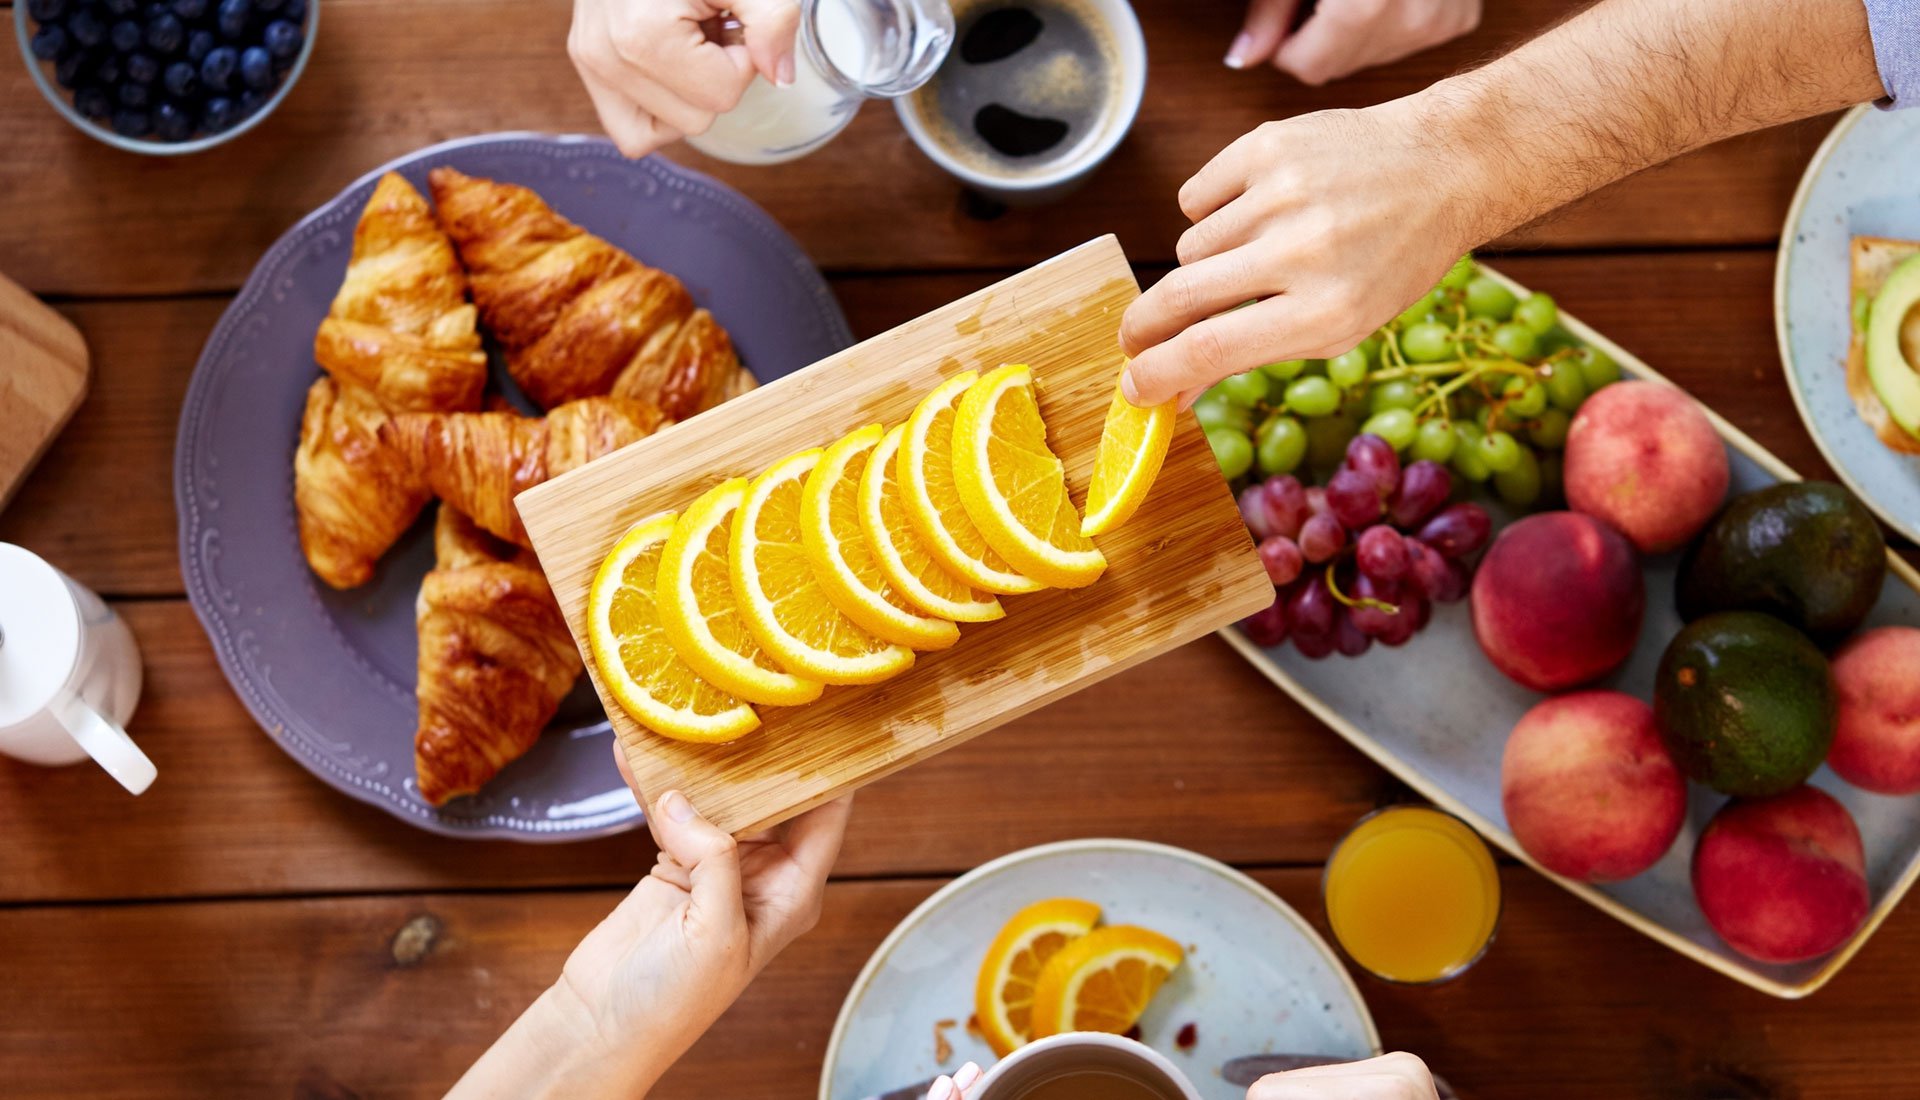 Copioso desayuno sobre una mesa de madera con una bandeja con rodajas de naranja en primer plano siendo degustada por una persona.